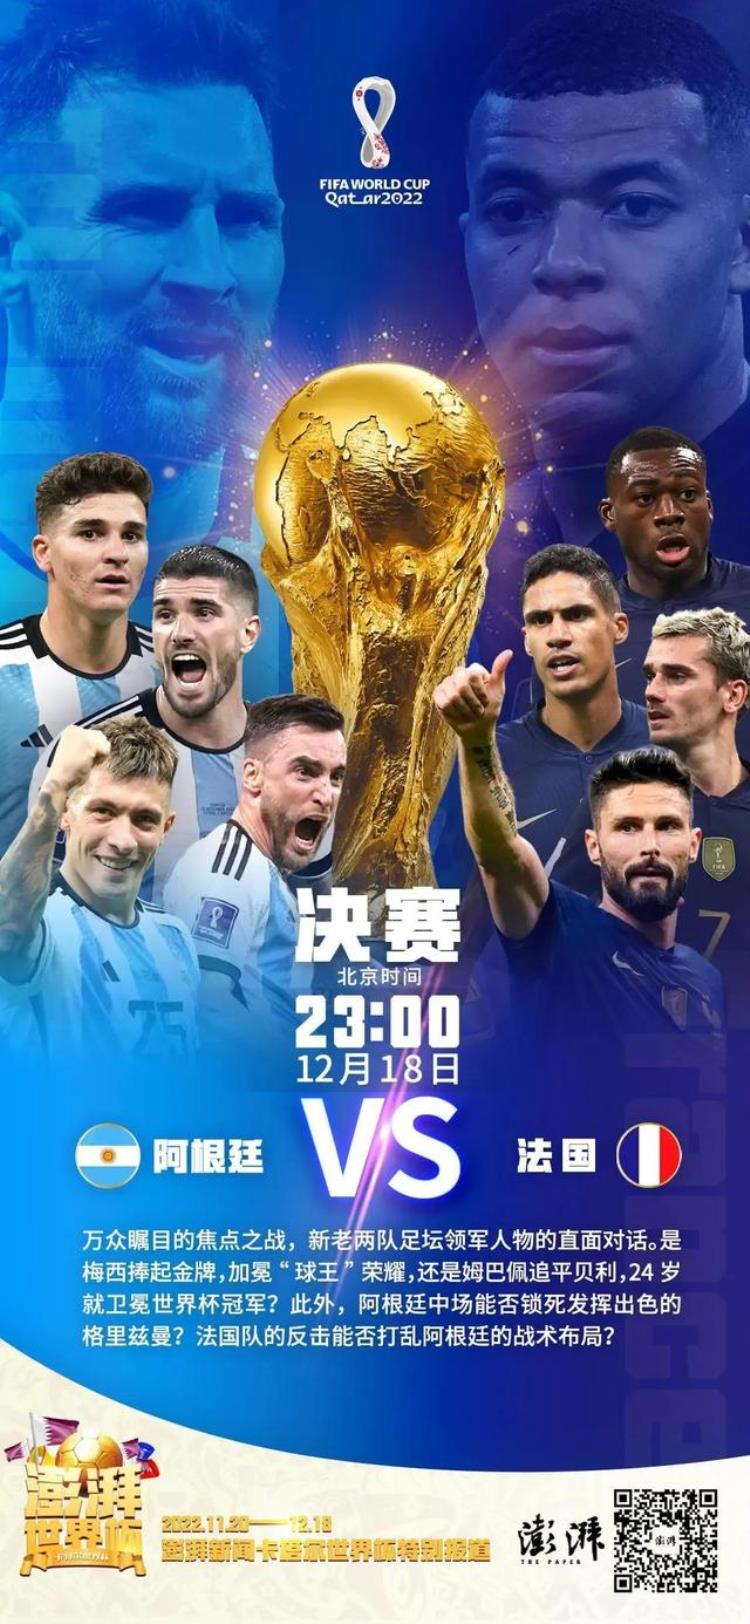 世界杯宣传海报「关于世界杯决赛的部分媒体和赞助商设计的封面及海报请欣赏」